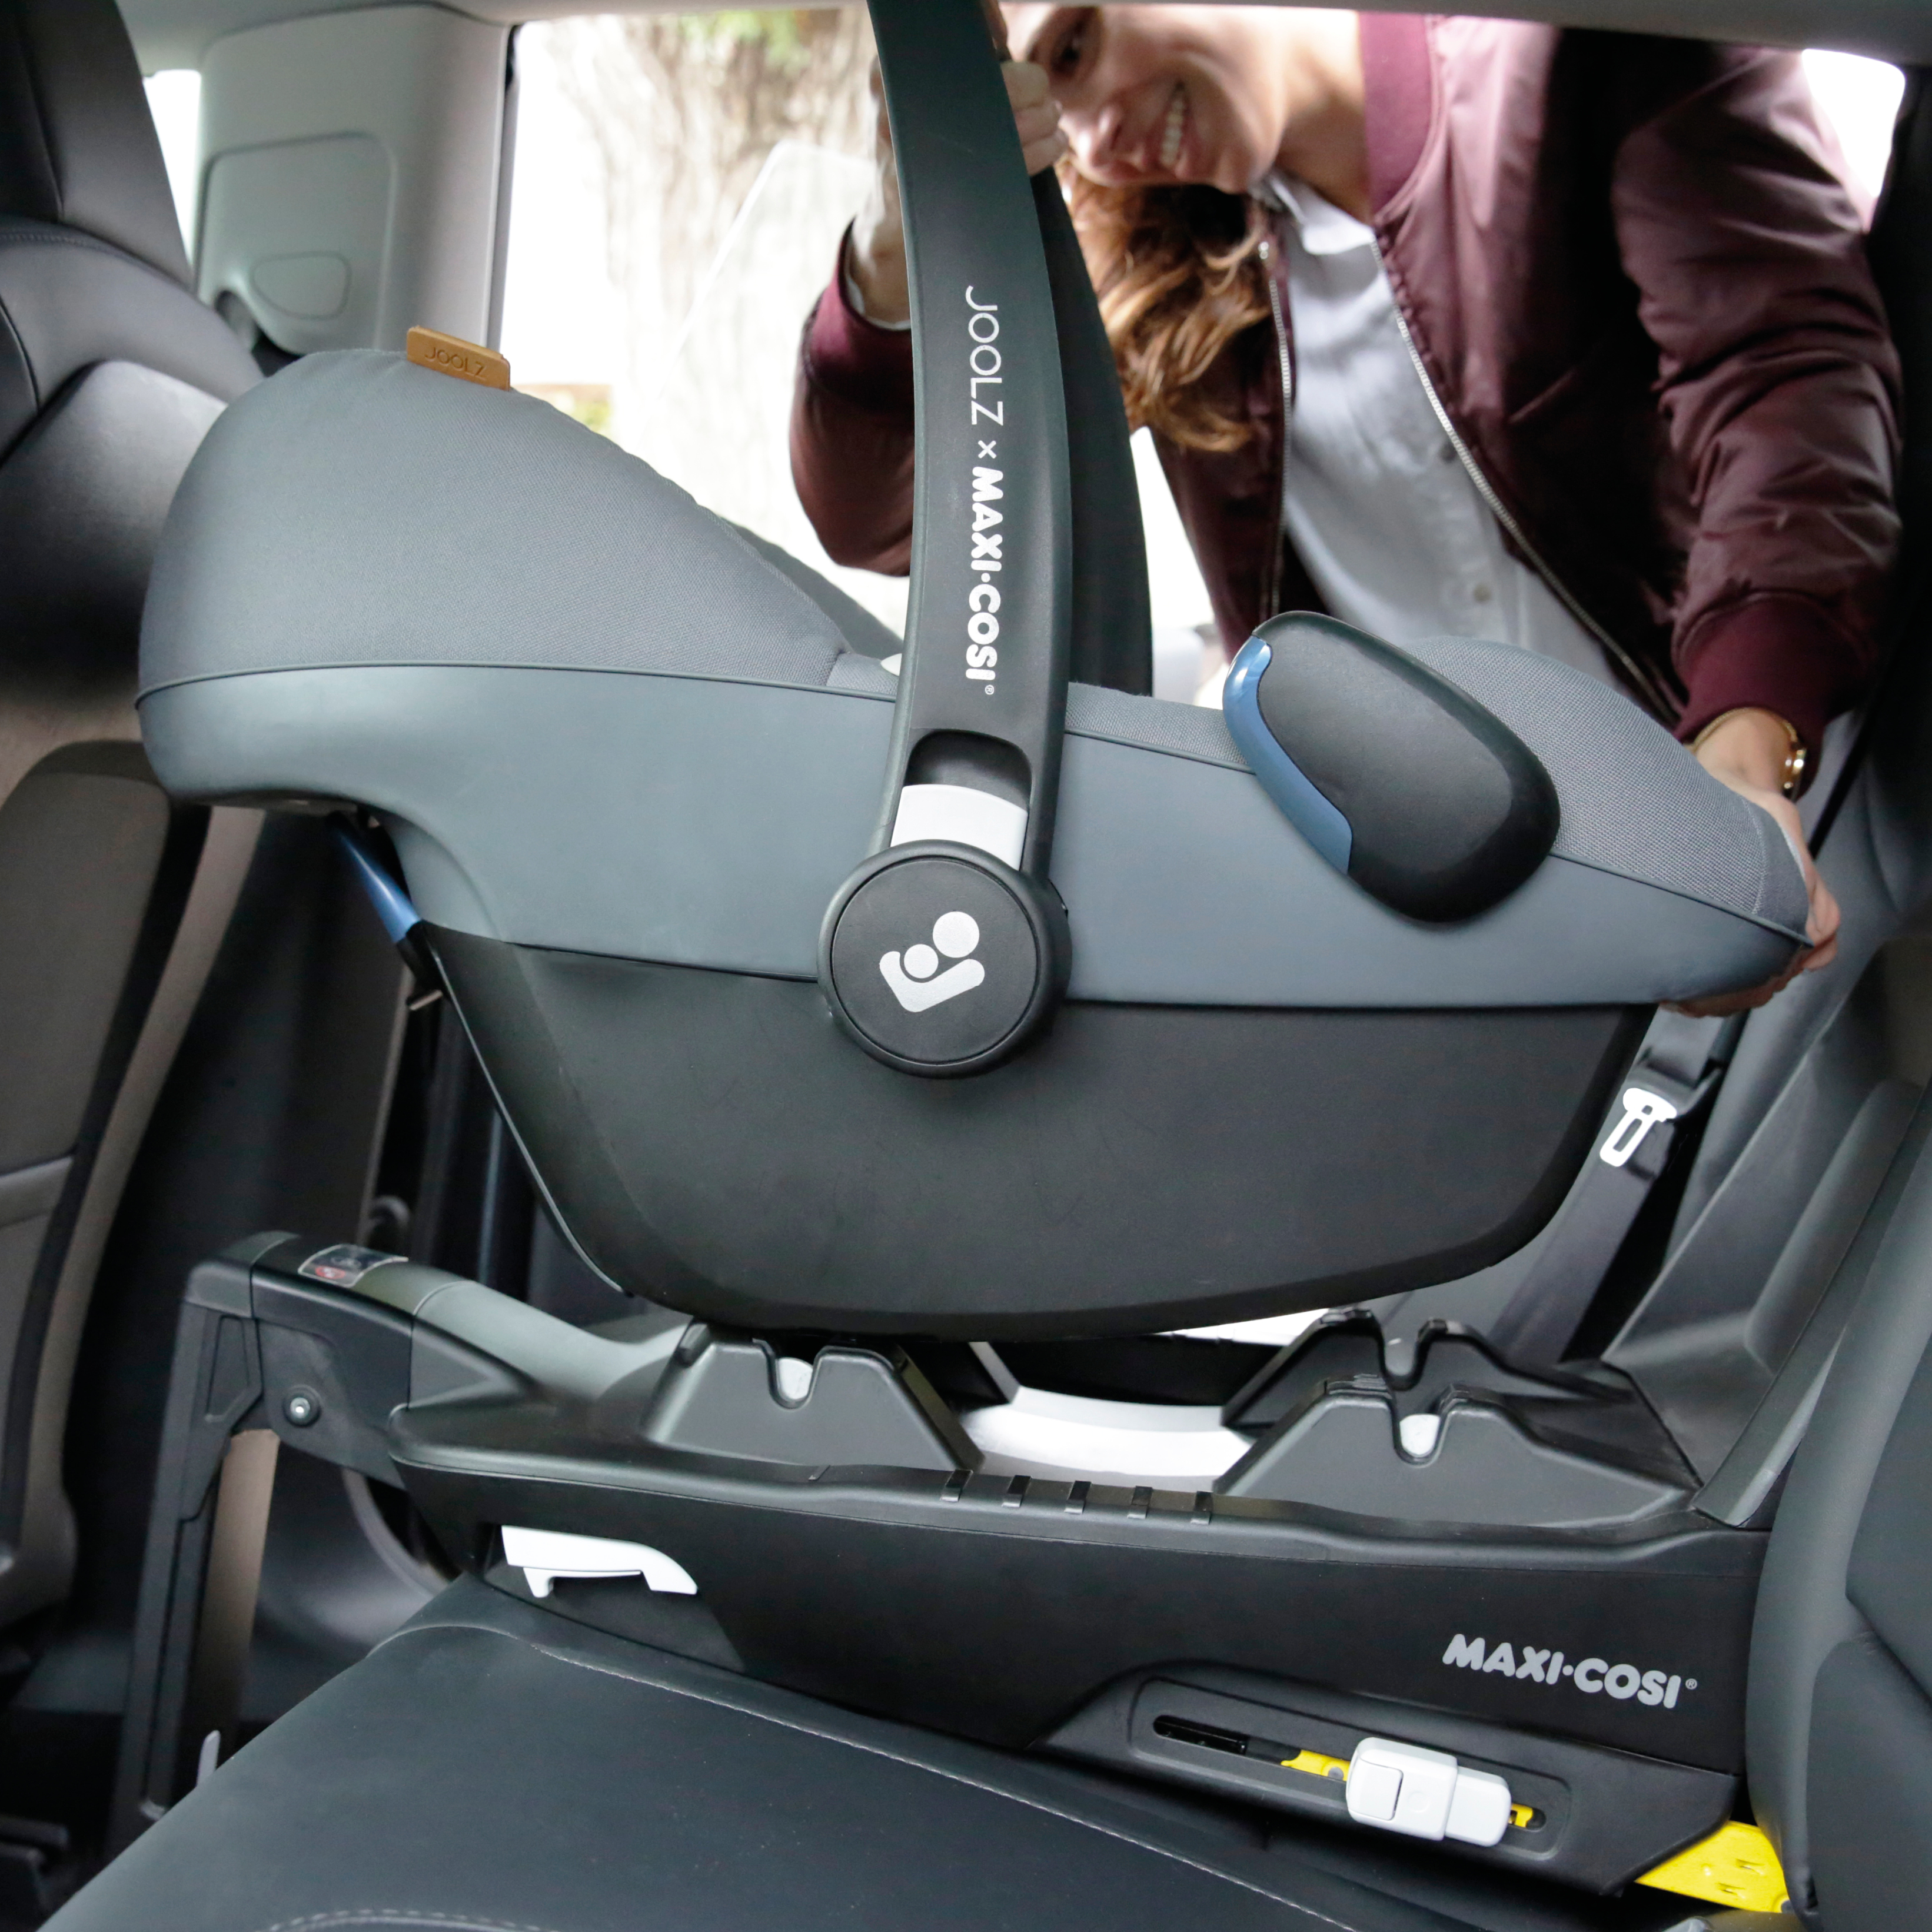 Joolz Maxi Cosi Familyfix3 Base Now - Maxi Cosi Car Seat Instructions With Base